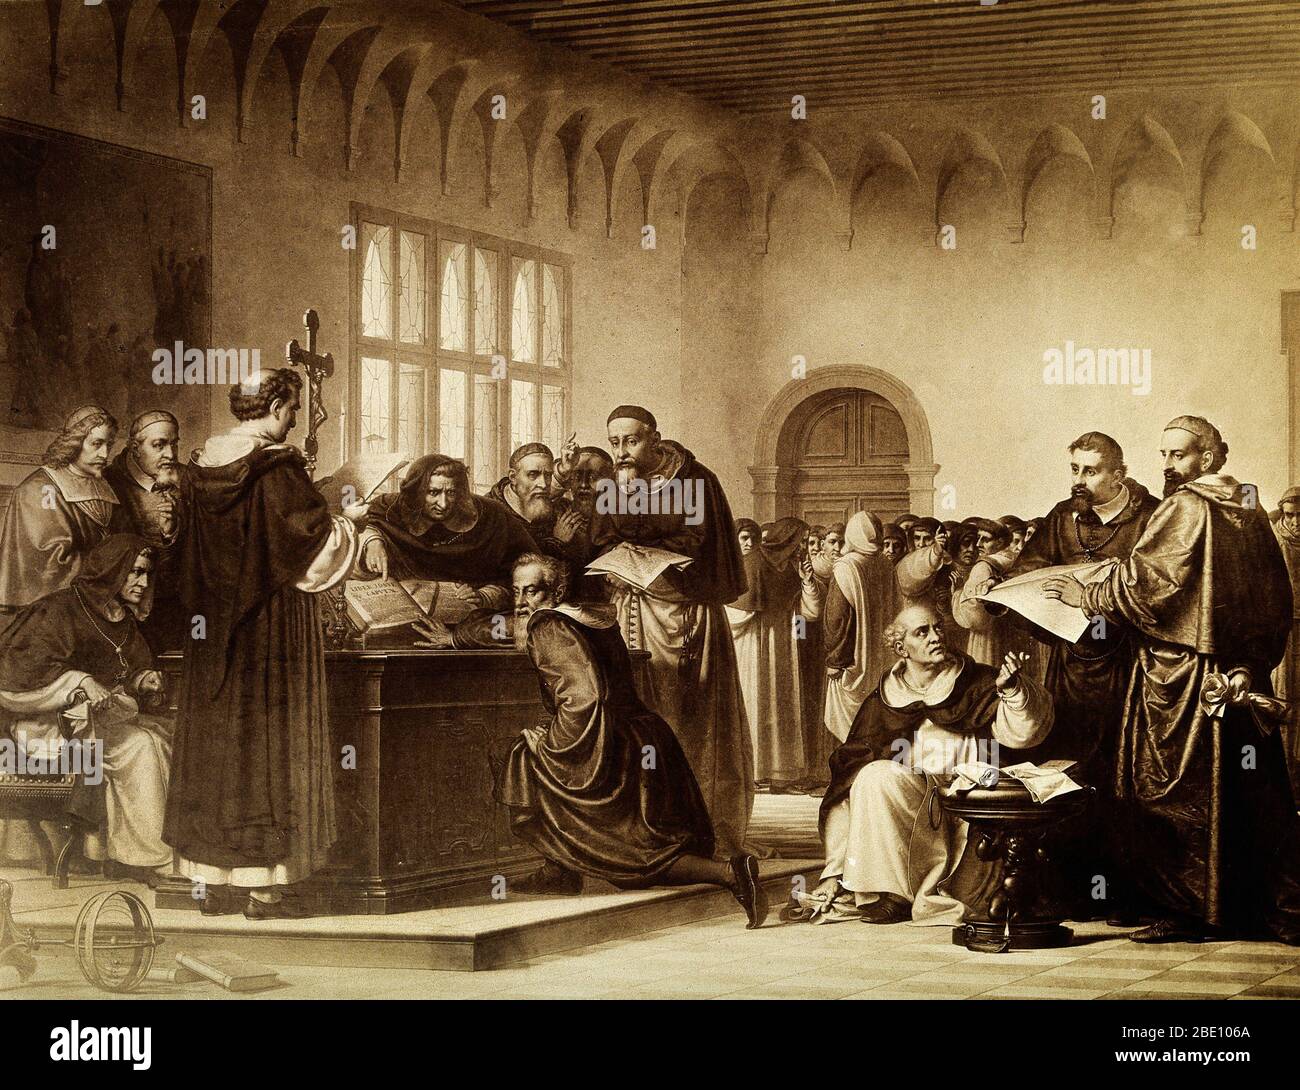 Galileo Galilei al suo processo dell'Inquisizione a Roma nel 1633. Gli viene mostrato di allontanare la Bibbia. Galileo Galilei (15 febbraio 1564 – 8 gennaio 1642) è stato un fisico, matematico, astronomo e filosofo italiano. Galileo fu il primo a utilizzare con successo un telescopio per osservare il cielo, scoprire nuove stelle, montagne sulla Luna e le fasi di Venere. La sua scoperta di lune che cerchiavano Giove, non la Terra, offrì il sostegno al controverso sistema copernicano che rimuoveva la Terra dal centro del sistema solare. Questo portò Galileo in conflitto con i Catoli Foto Stock